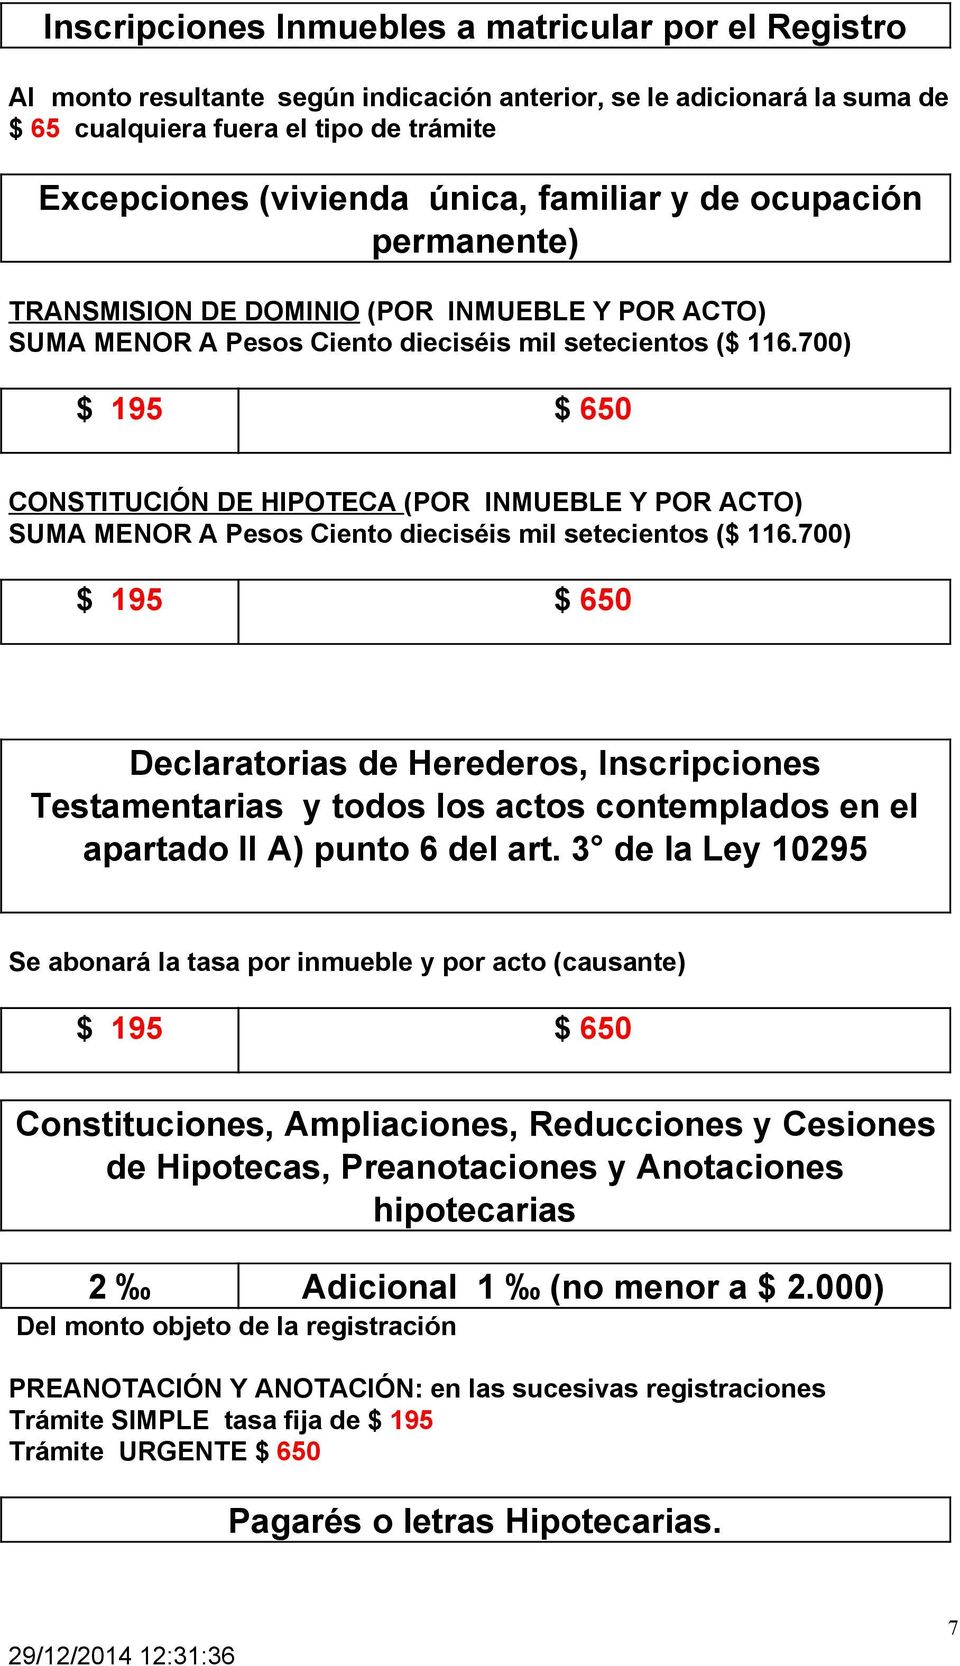 700) CONSTITUCIÓN DE HIPOTECA (POR INMUEBLE Y POR ACTO) SUMA MENOR A Pesos Ciento dieciséis mil setecientos ($ 116.